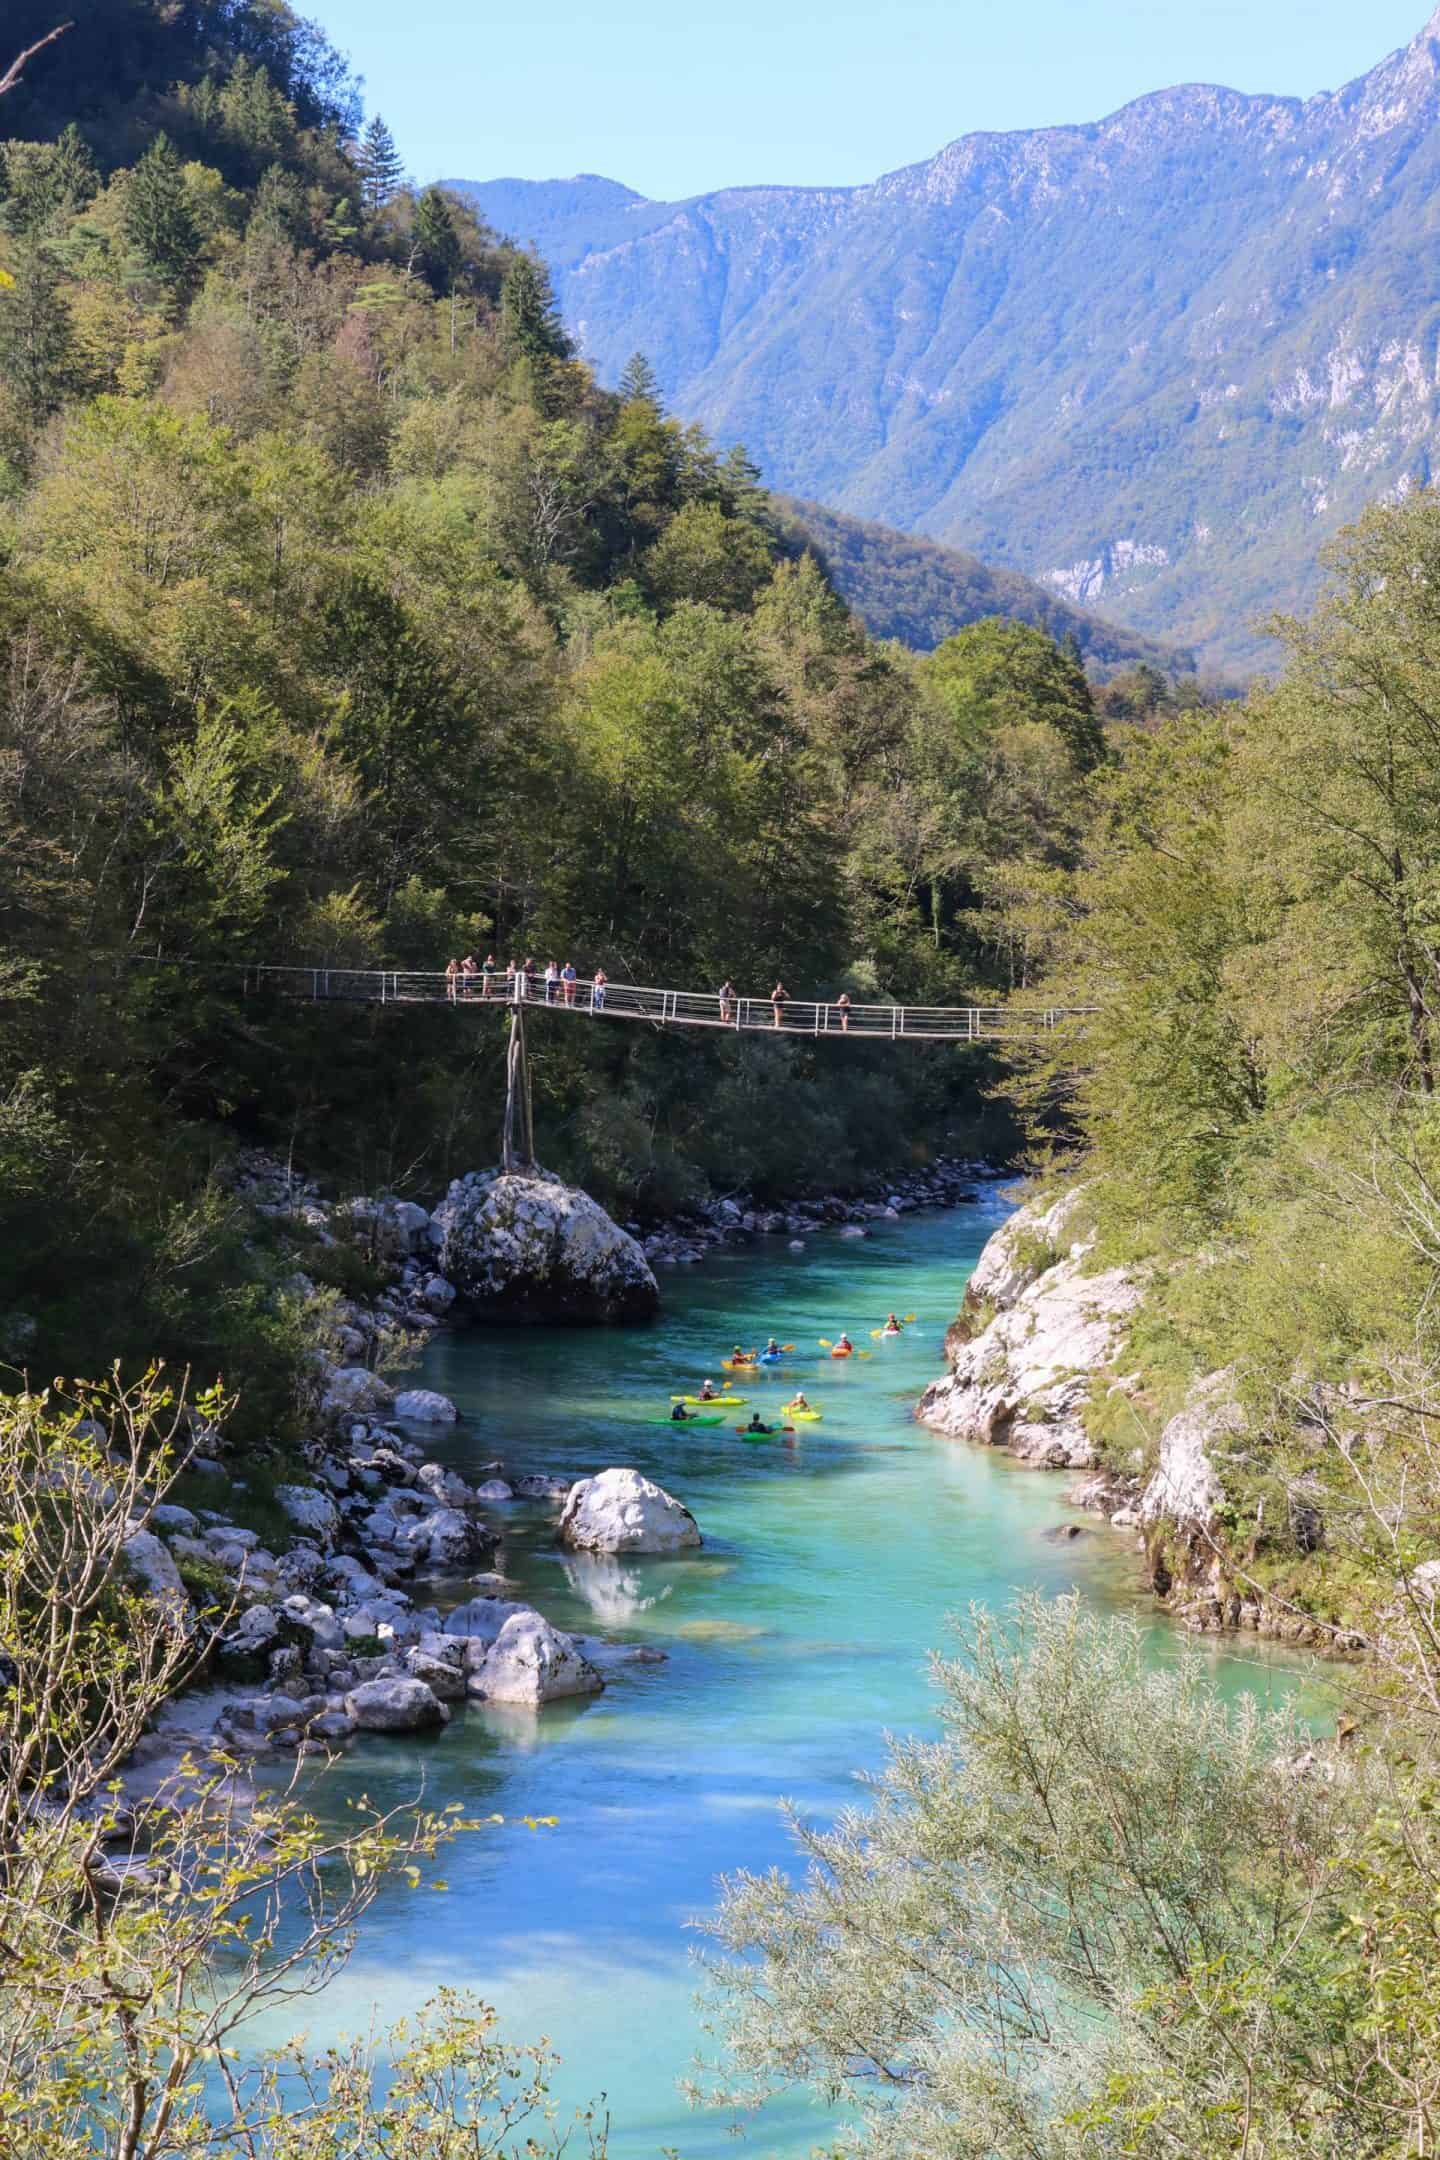 Soča river most beautiful river in Slovenia